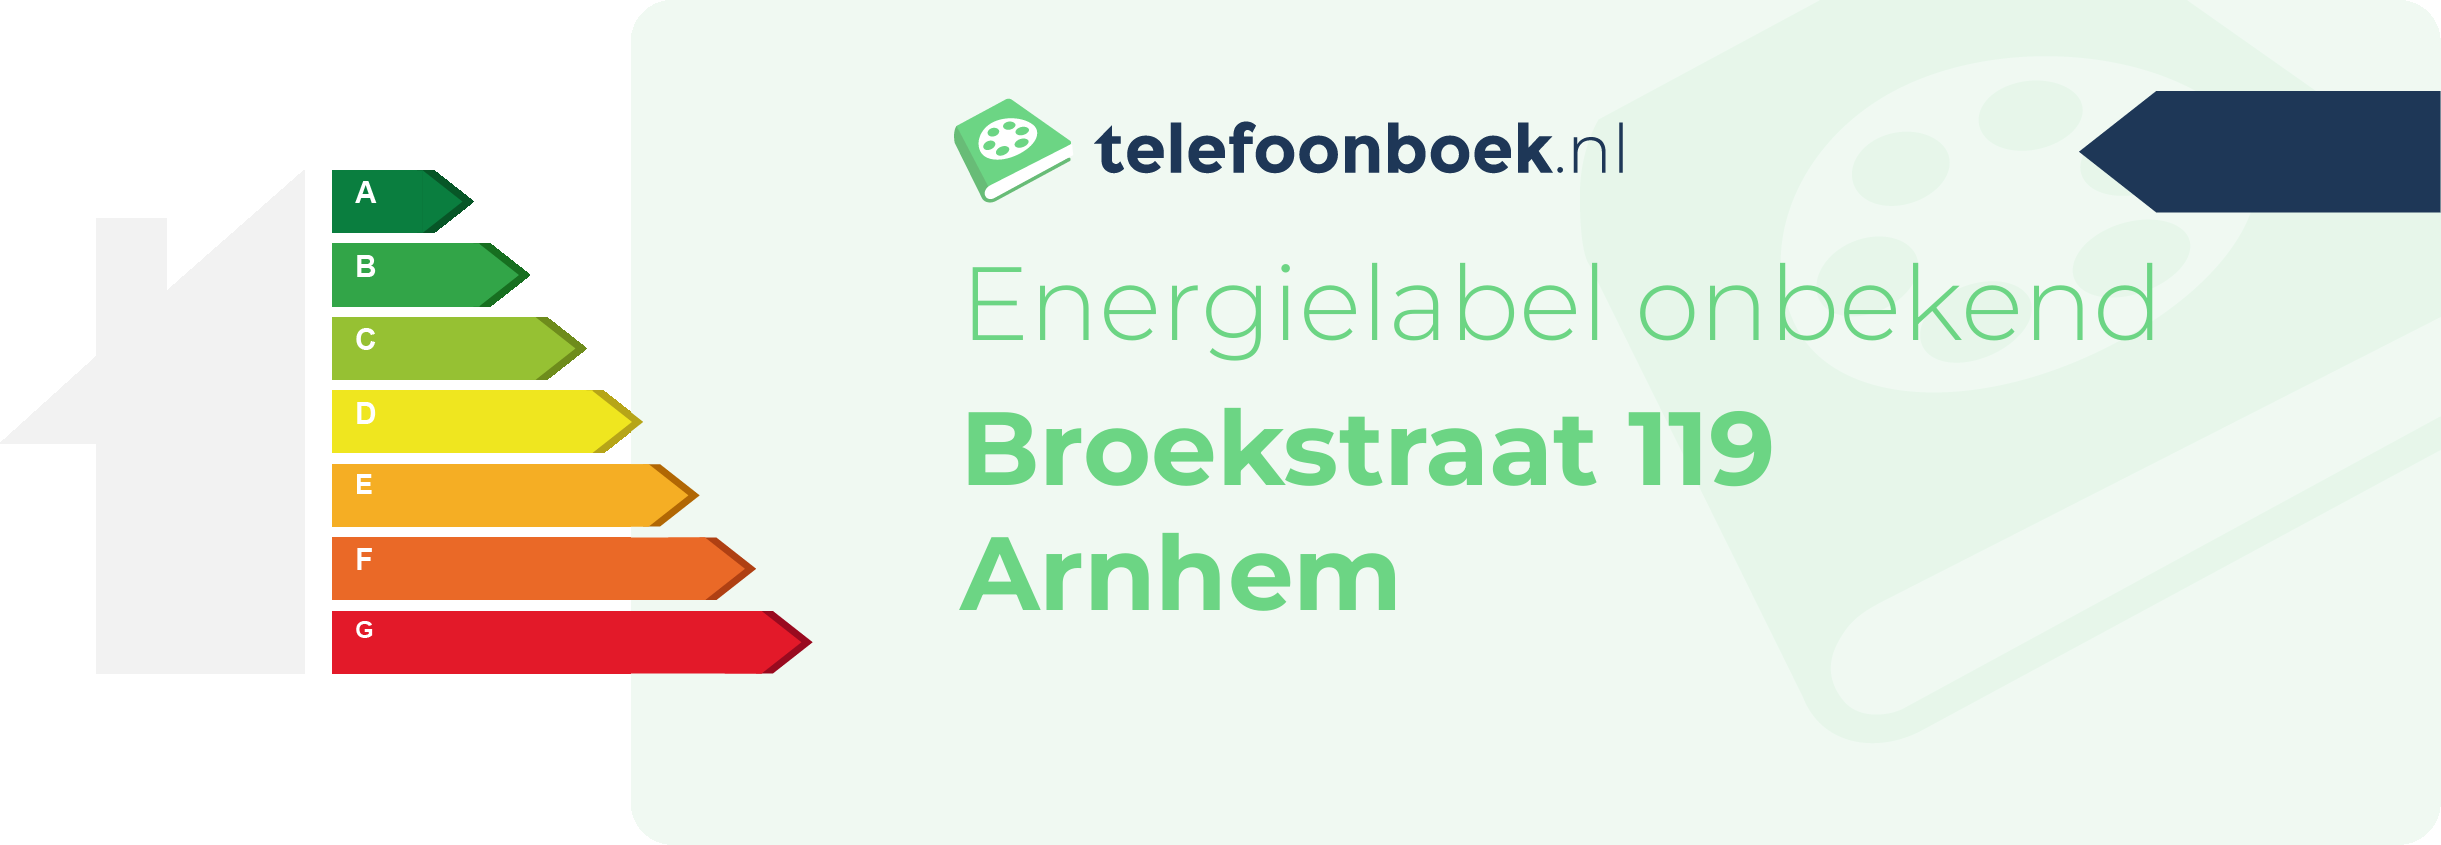 Energielabel Broekstraat 119 Arnhem